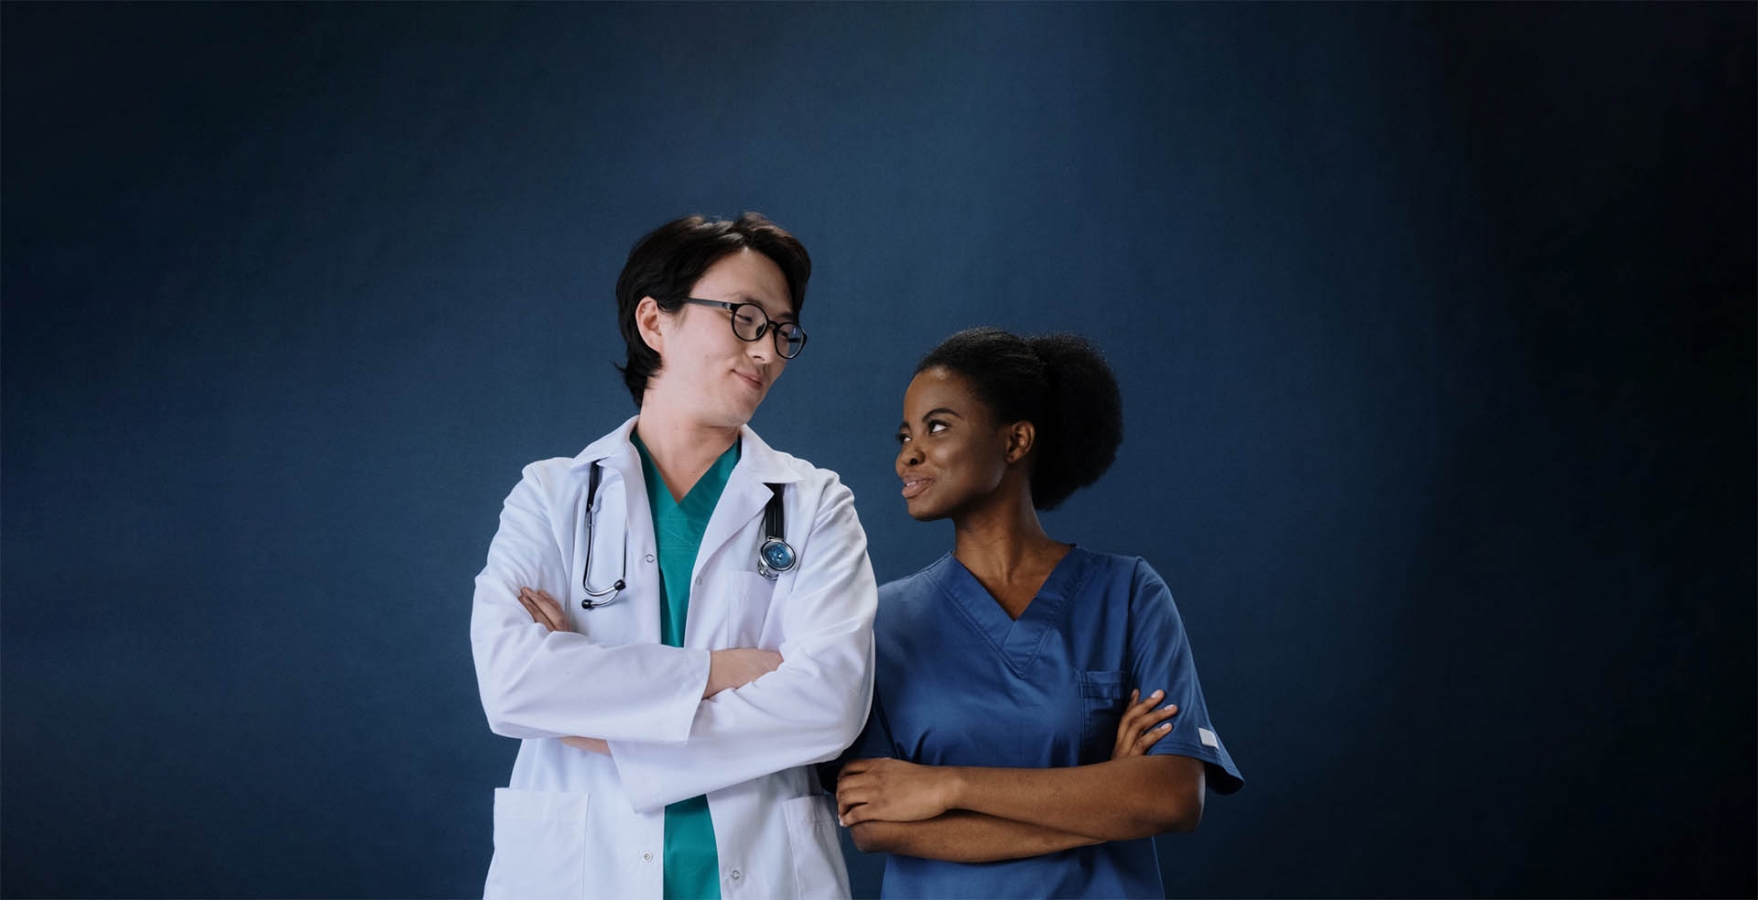 5 choses à considérer lors de la poursuite d'une carrière en soins infirmiers
